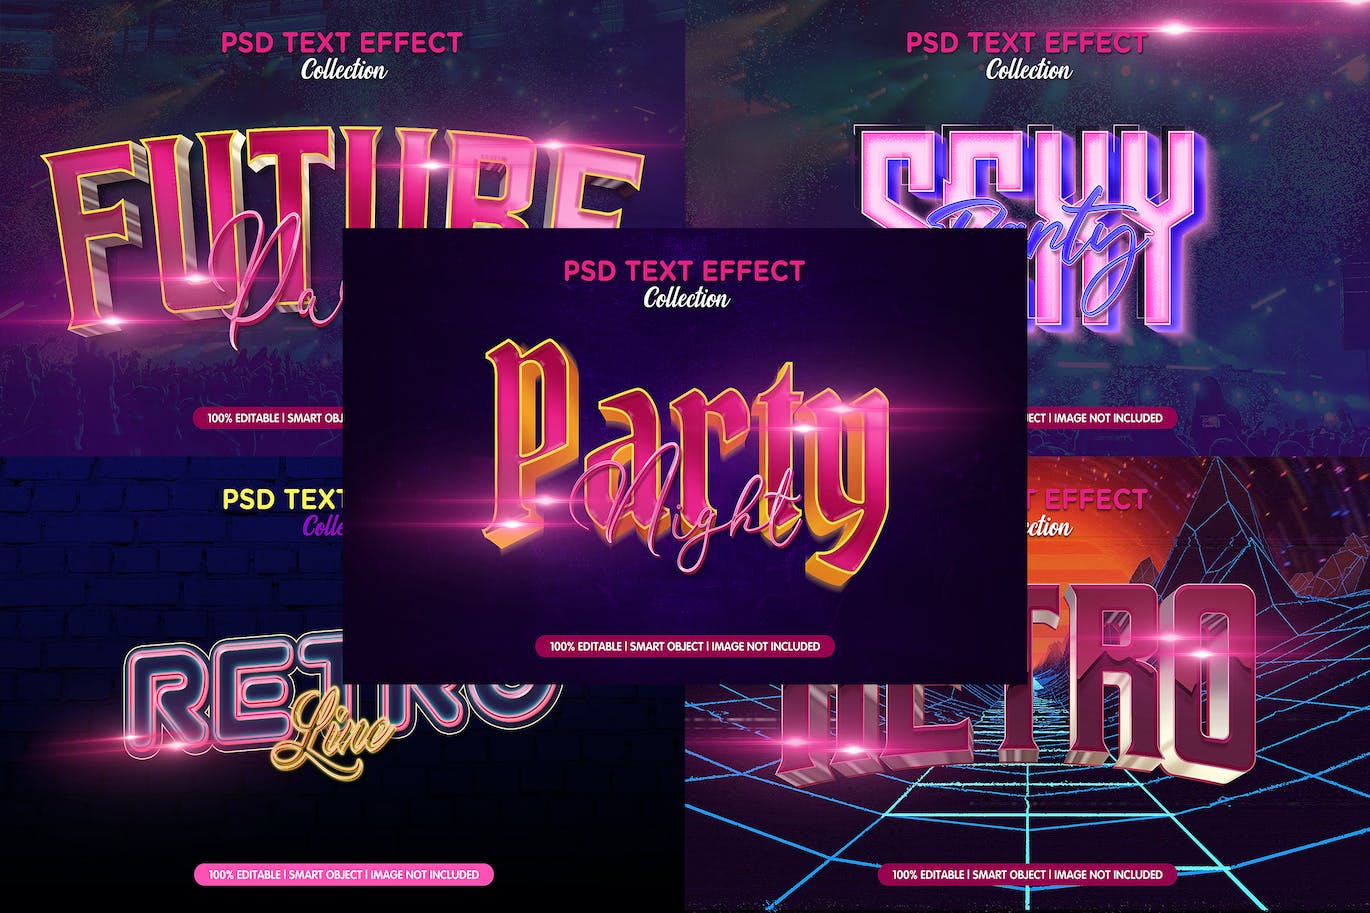 复古金属文字游戏风格封面PS图层样式retro-style-text-effect-psd-template-set